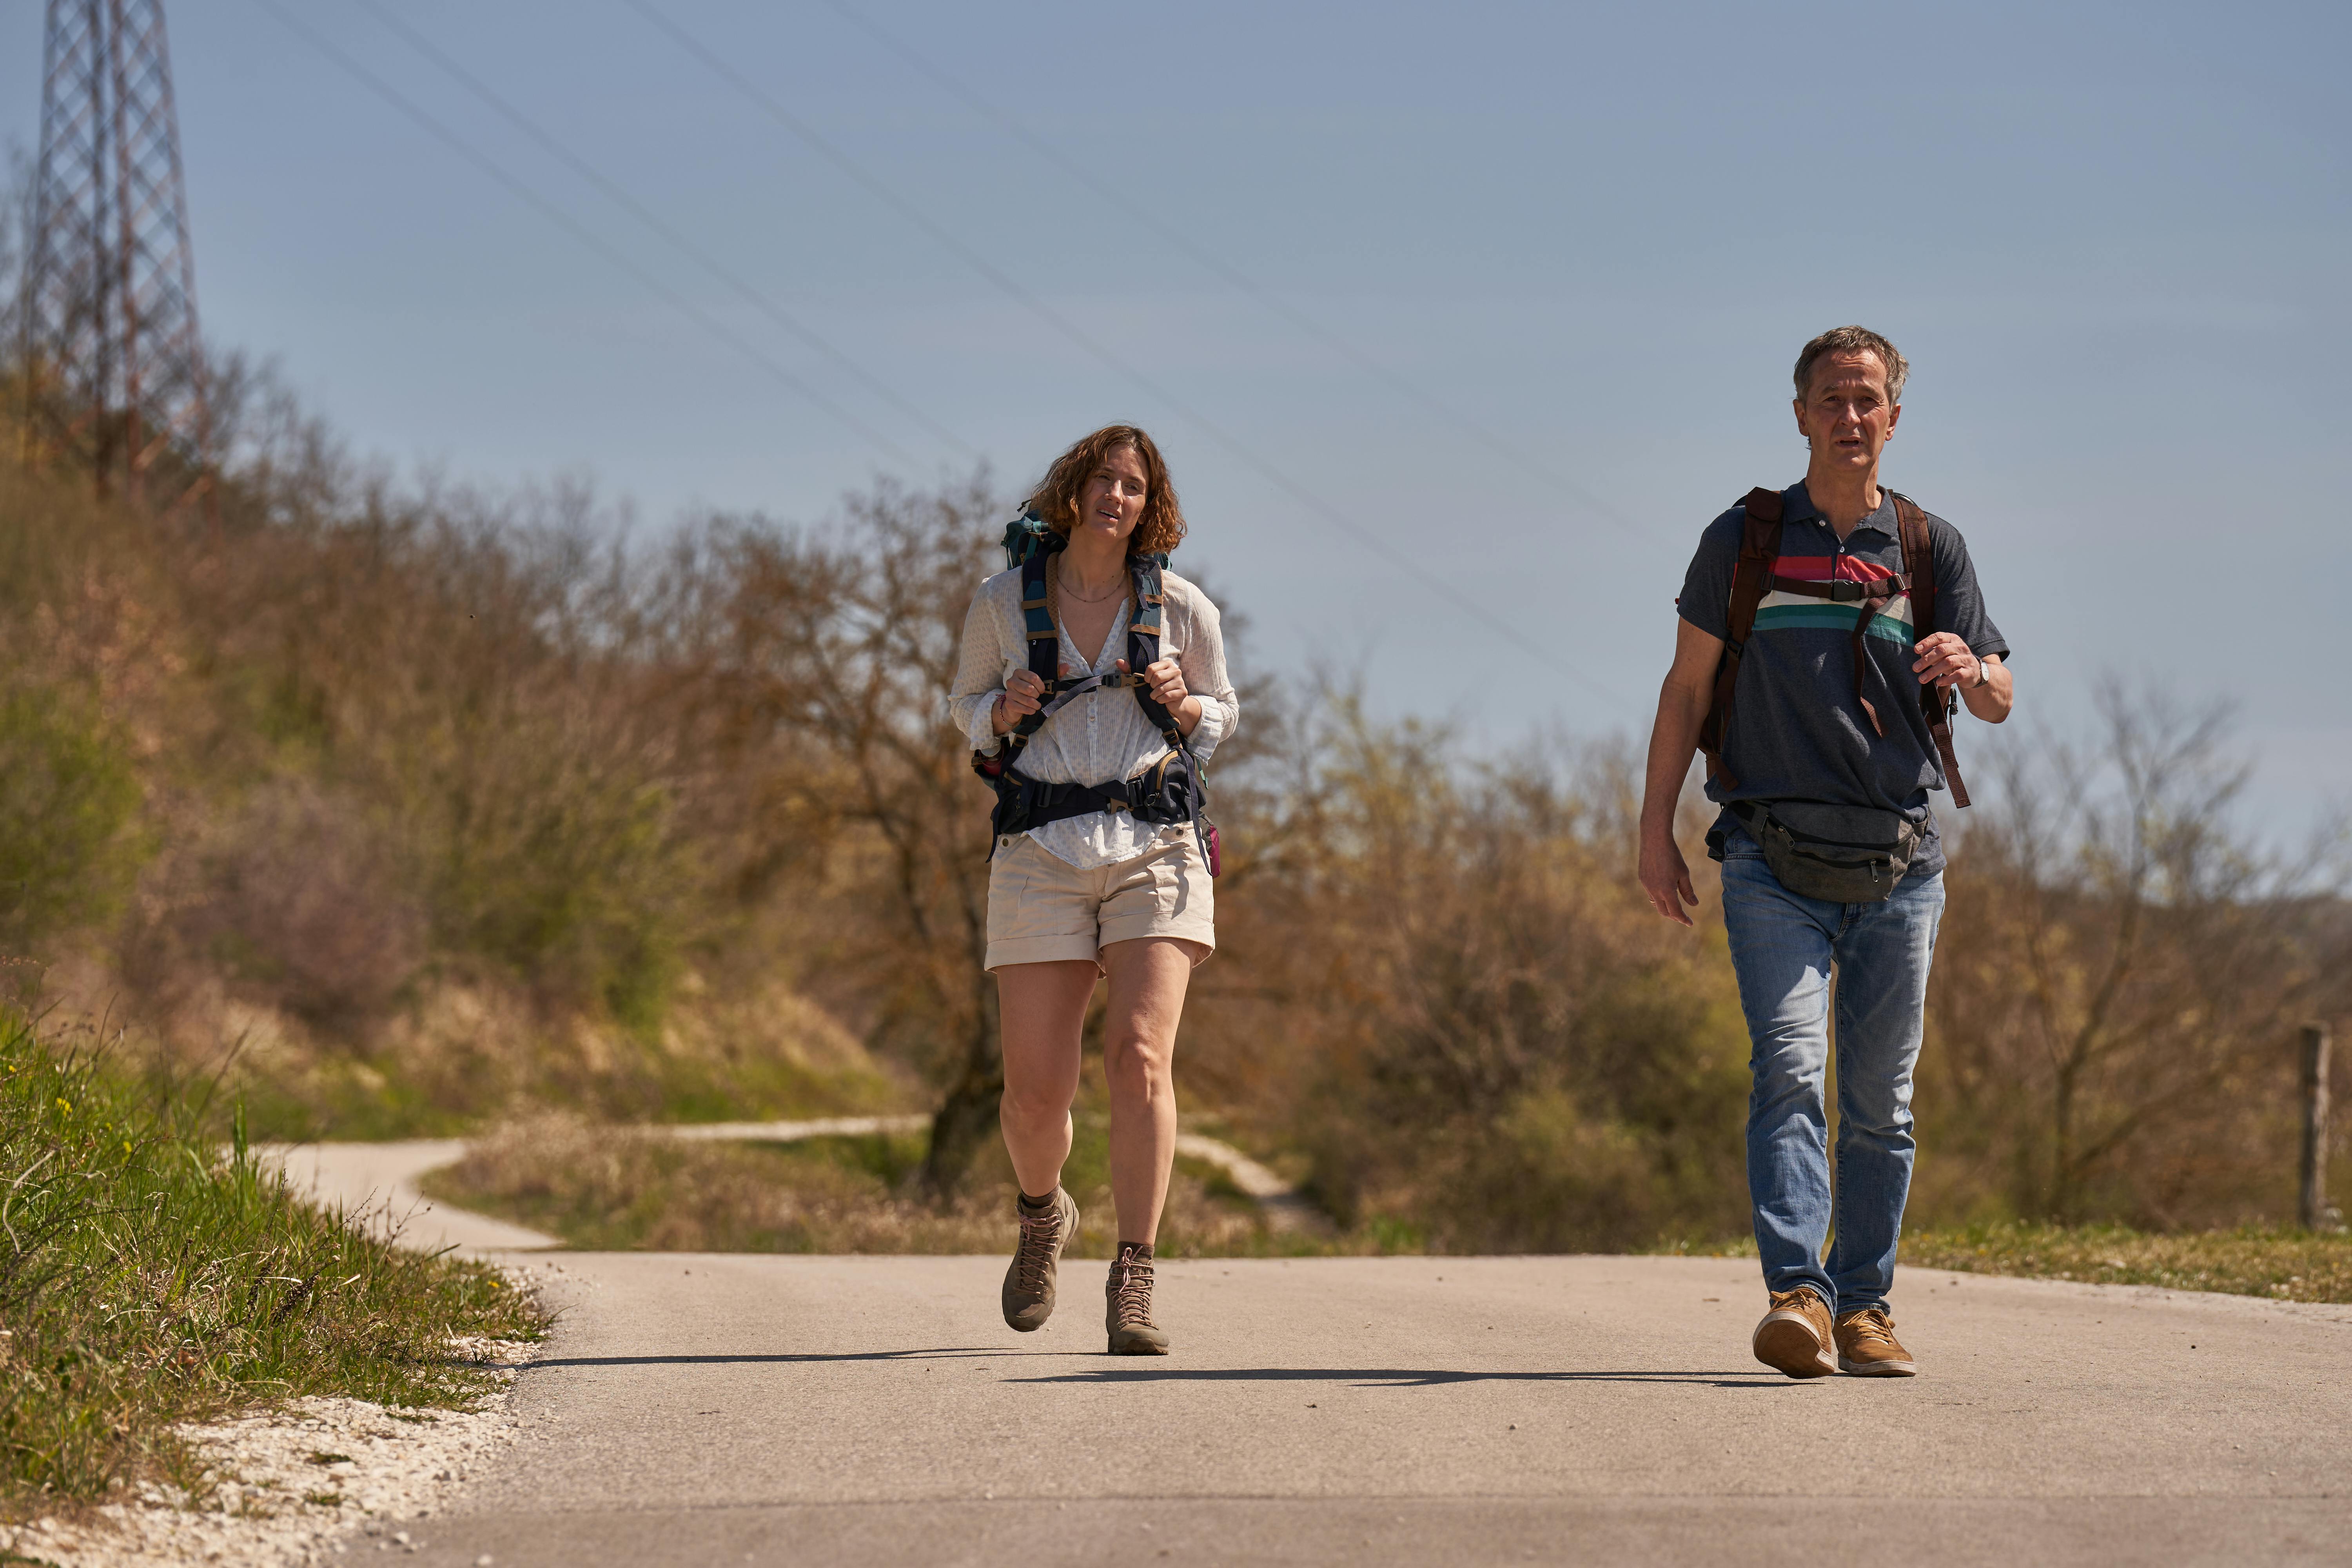 Lars Brygmann og Danica Curcic spiller far og datter i den kommende film "Camino".
